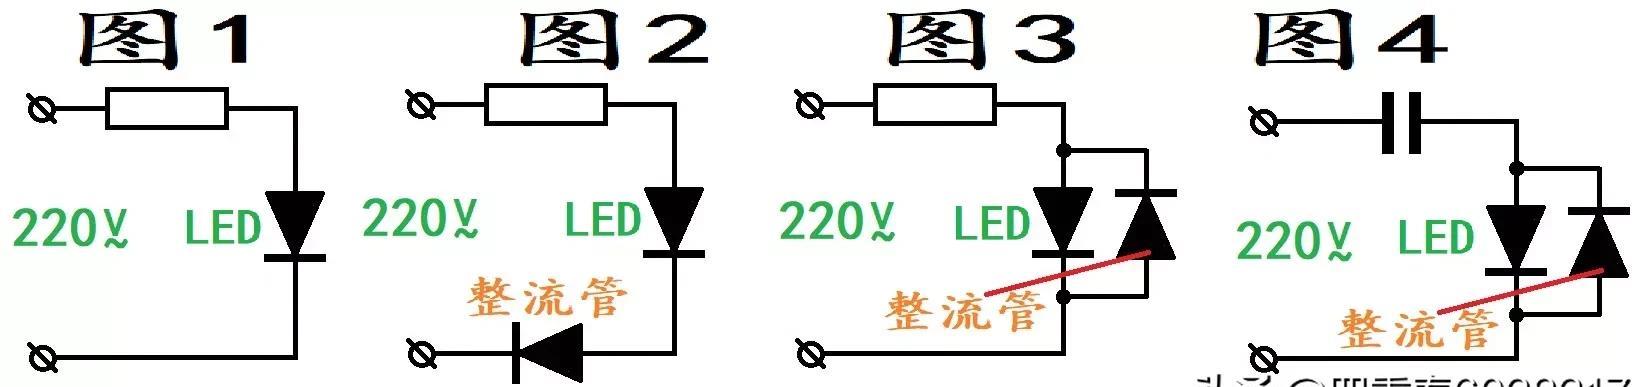 220伏led指示灯电路图图片